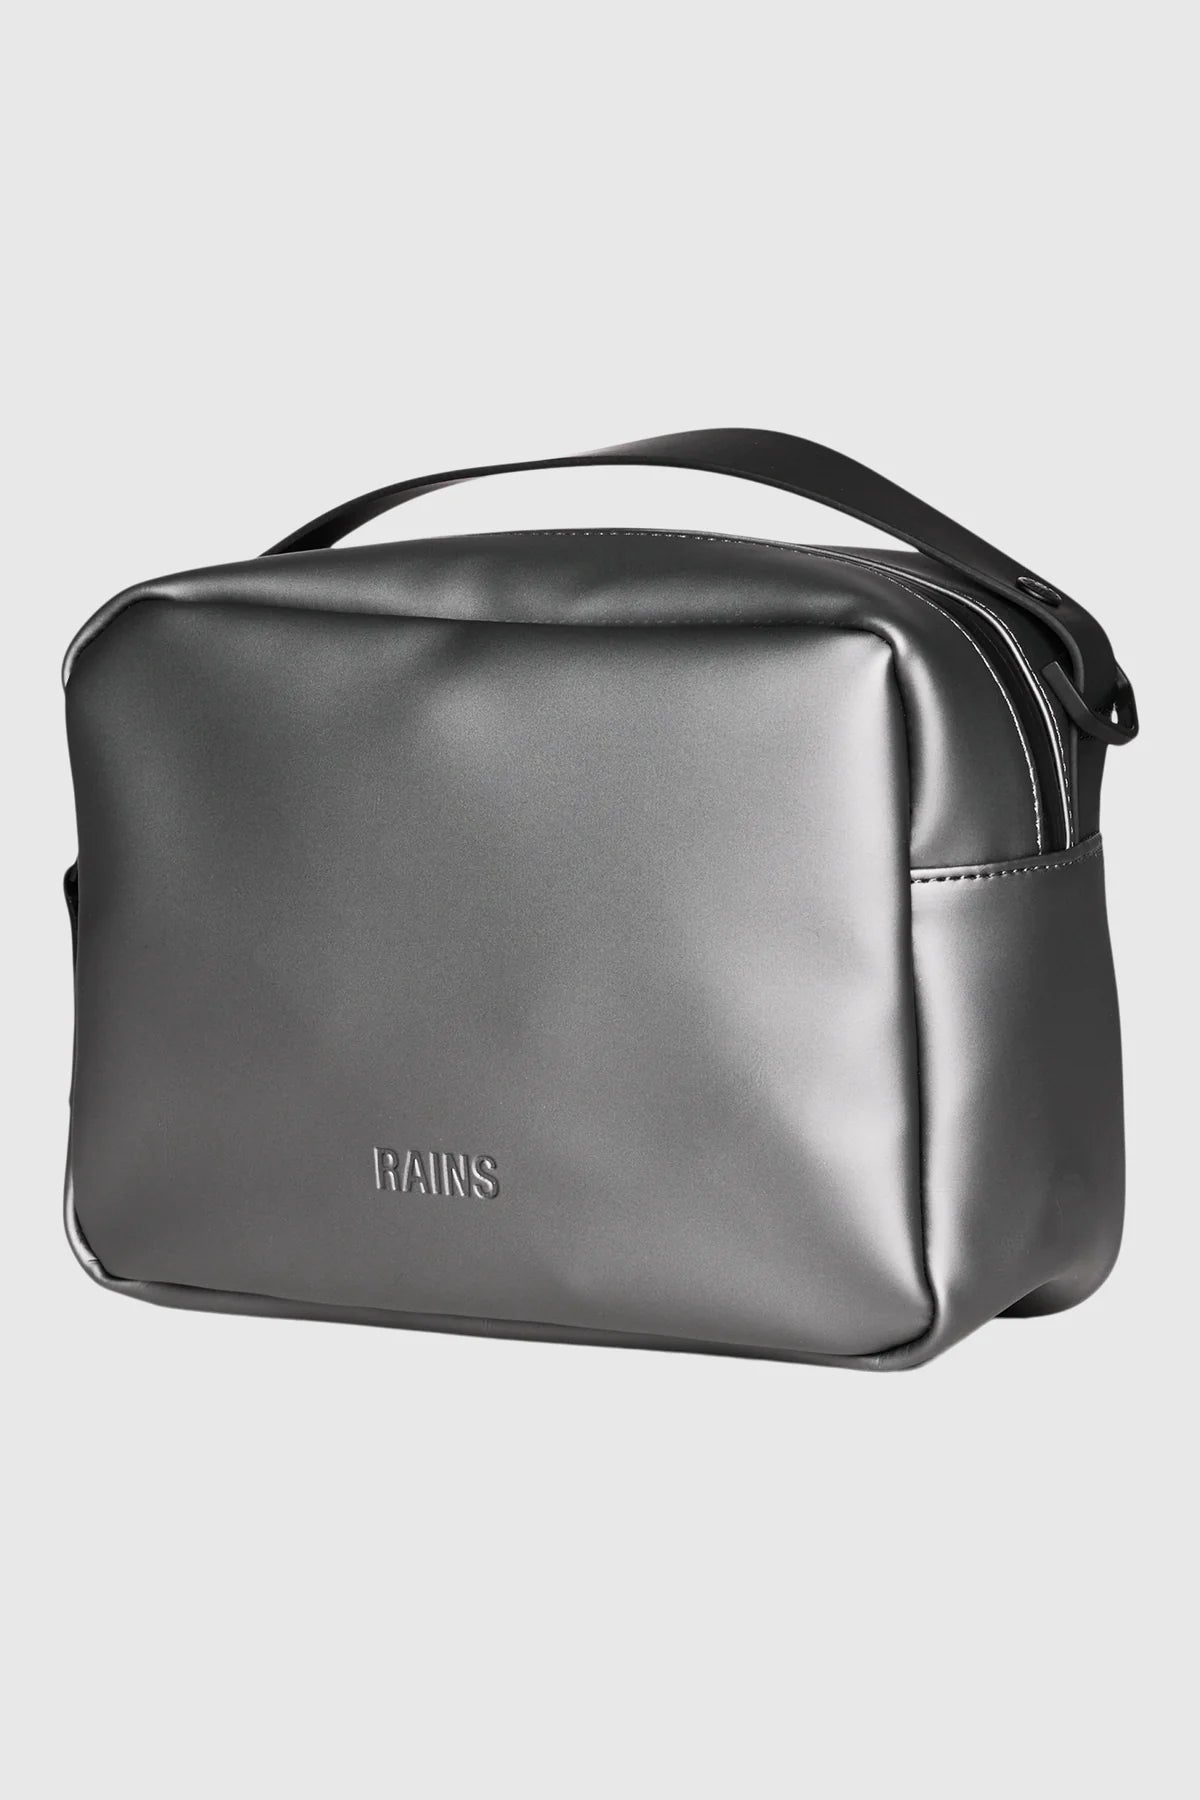 RAINS BOX BAG gray shoulder bag